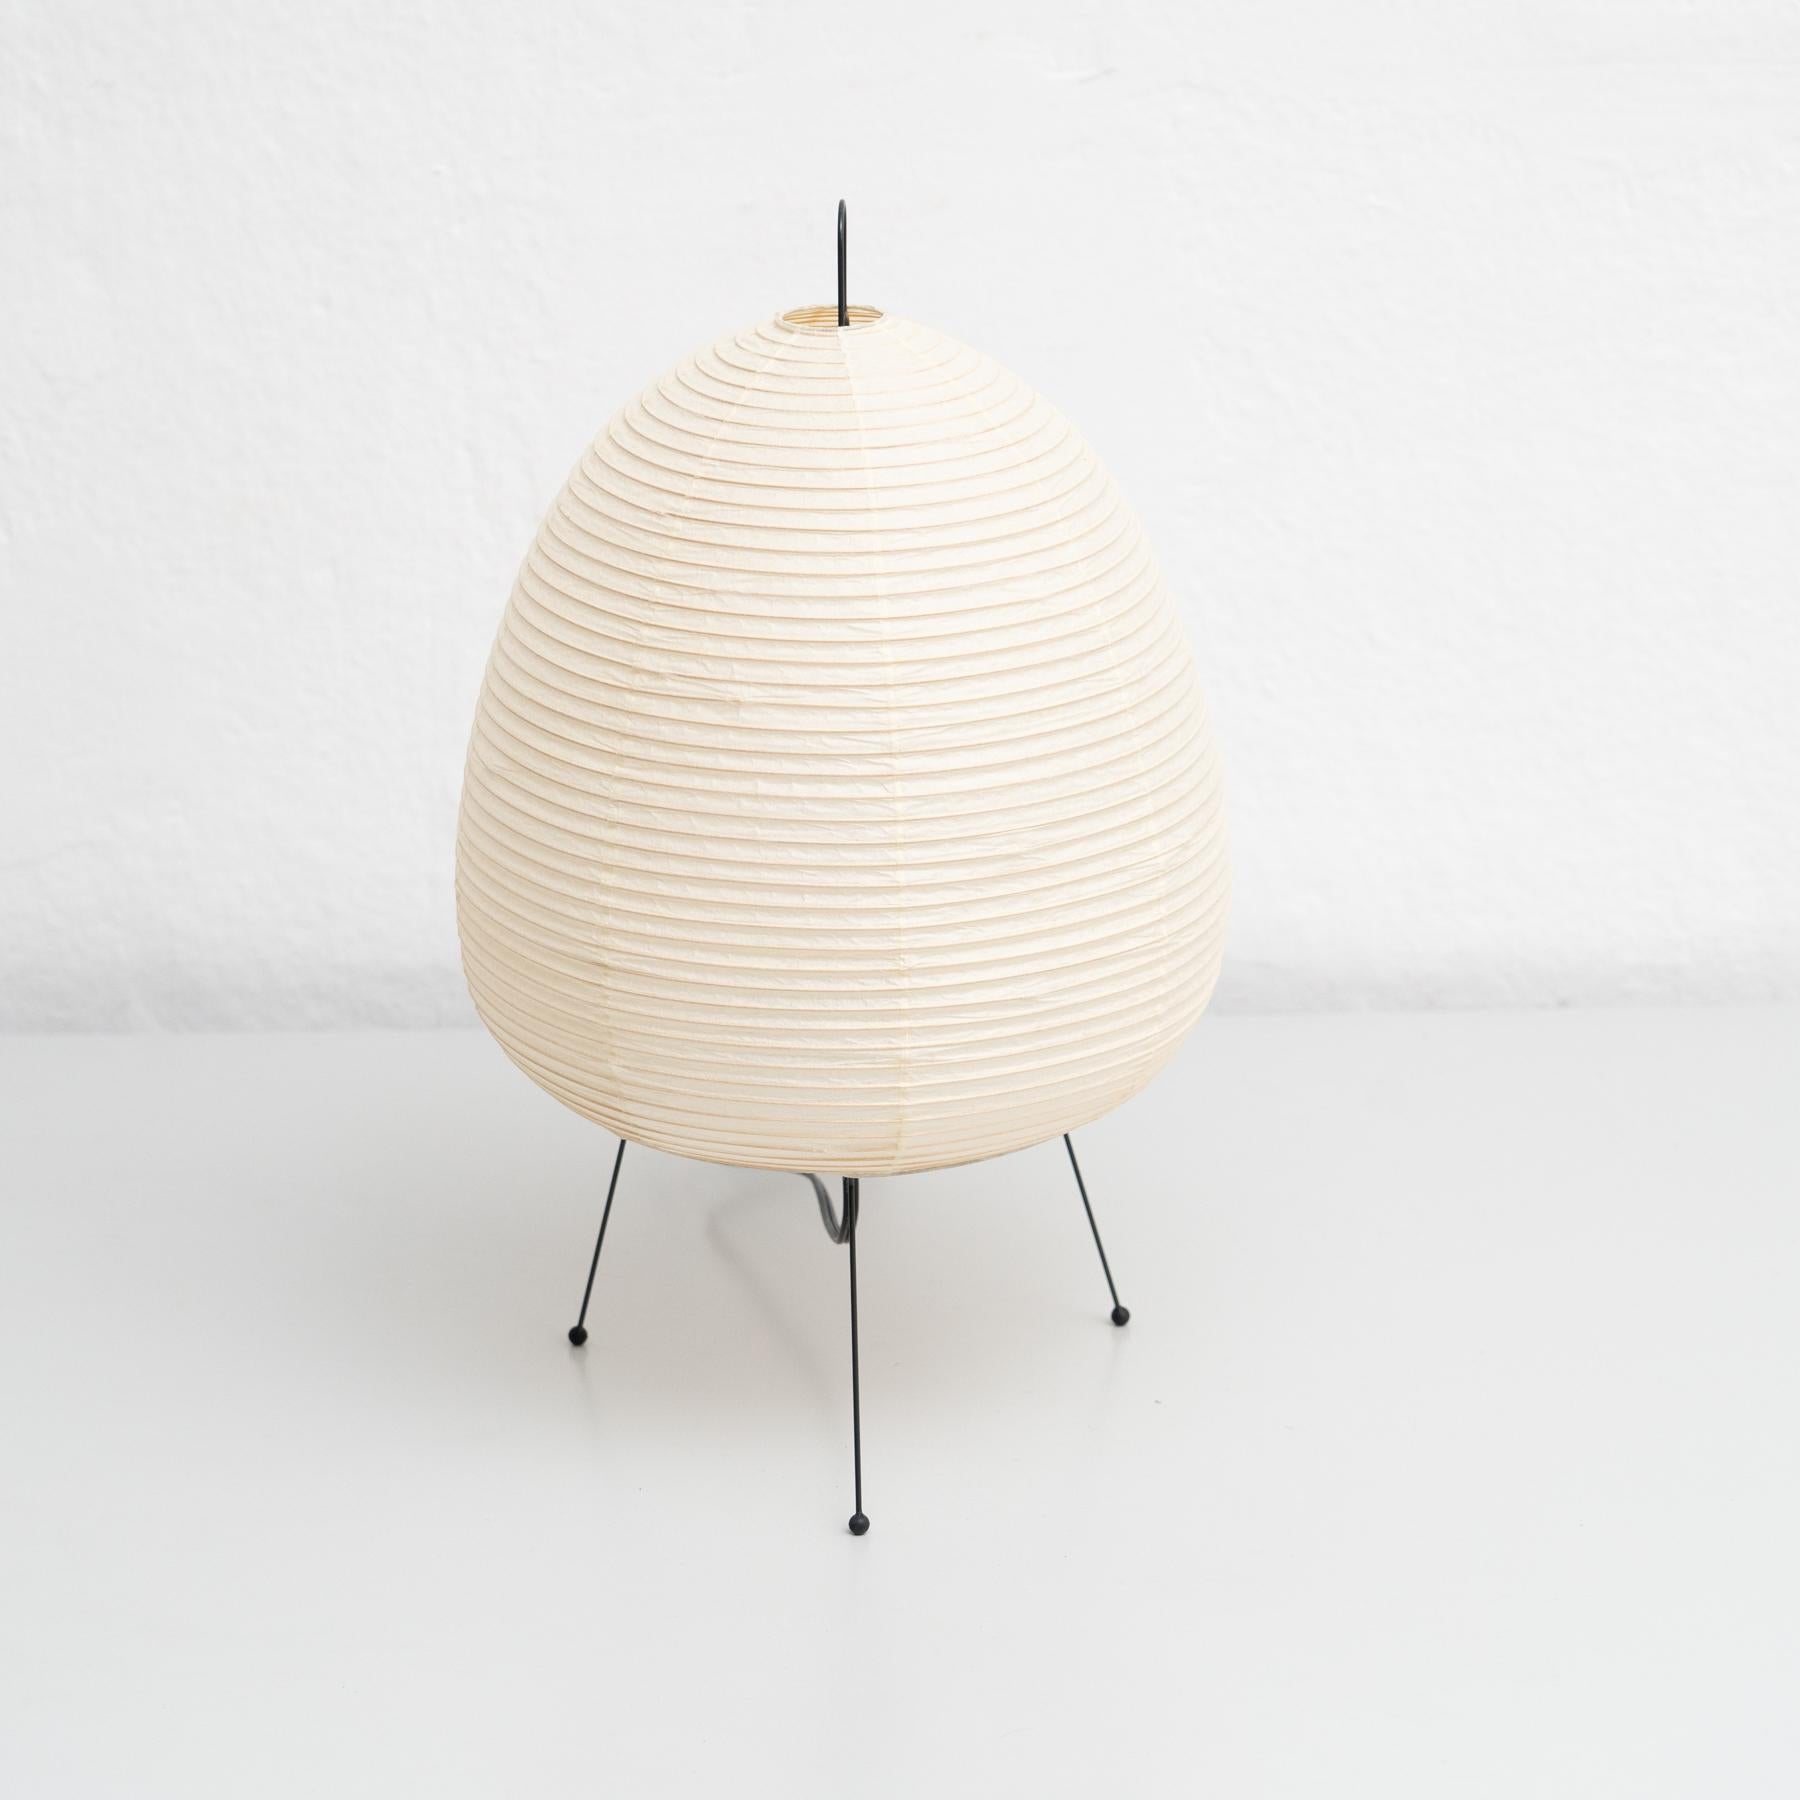 Akari 1A Lampe, entworfen von Isamu Noguchi.

In gutem Zustand.

Signierte Auflage mit gestempelter Herstellermarke.

Isamu Noguchi (1904-1988) war einer der wichtigsten und von der Kritik am meisten gefeierten Bildhauer des 20. Jahrhunderts. Im